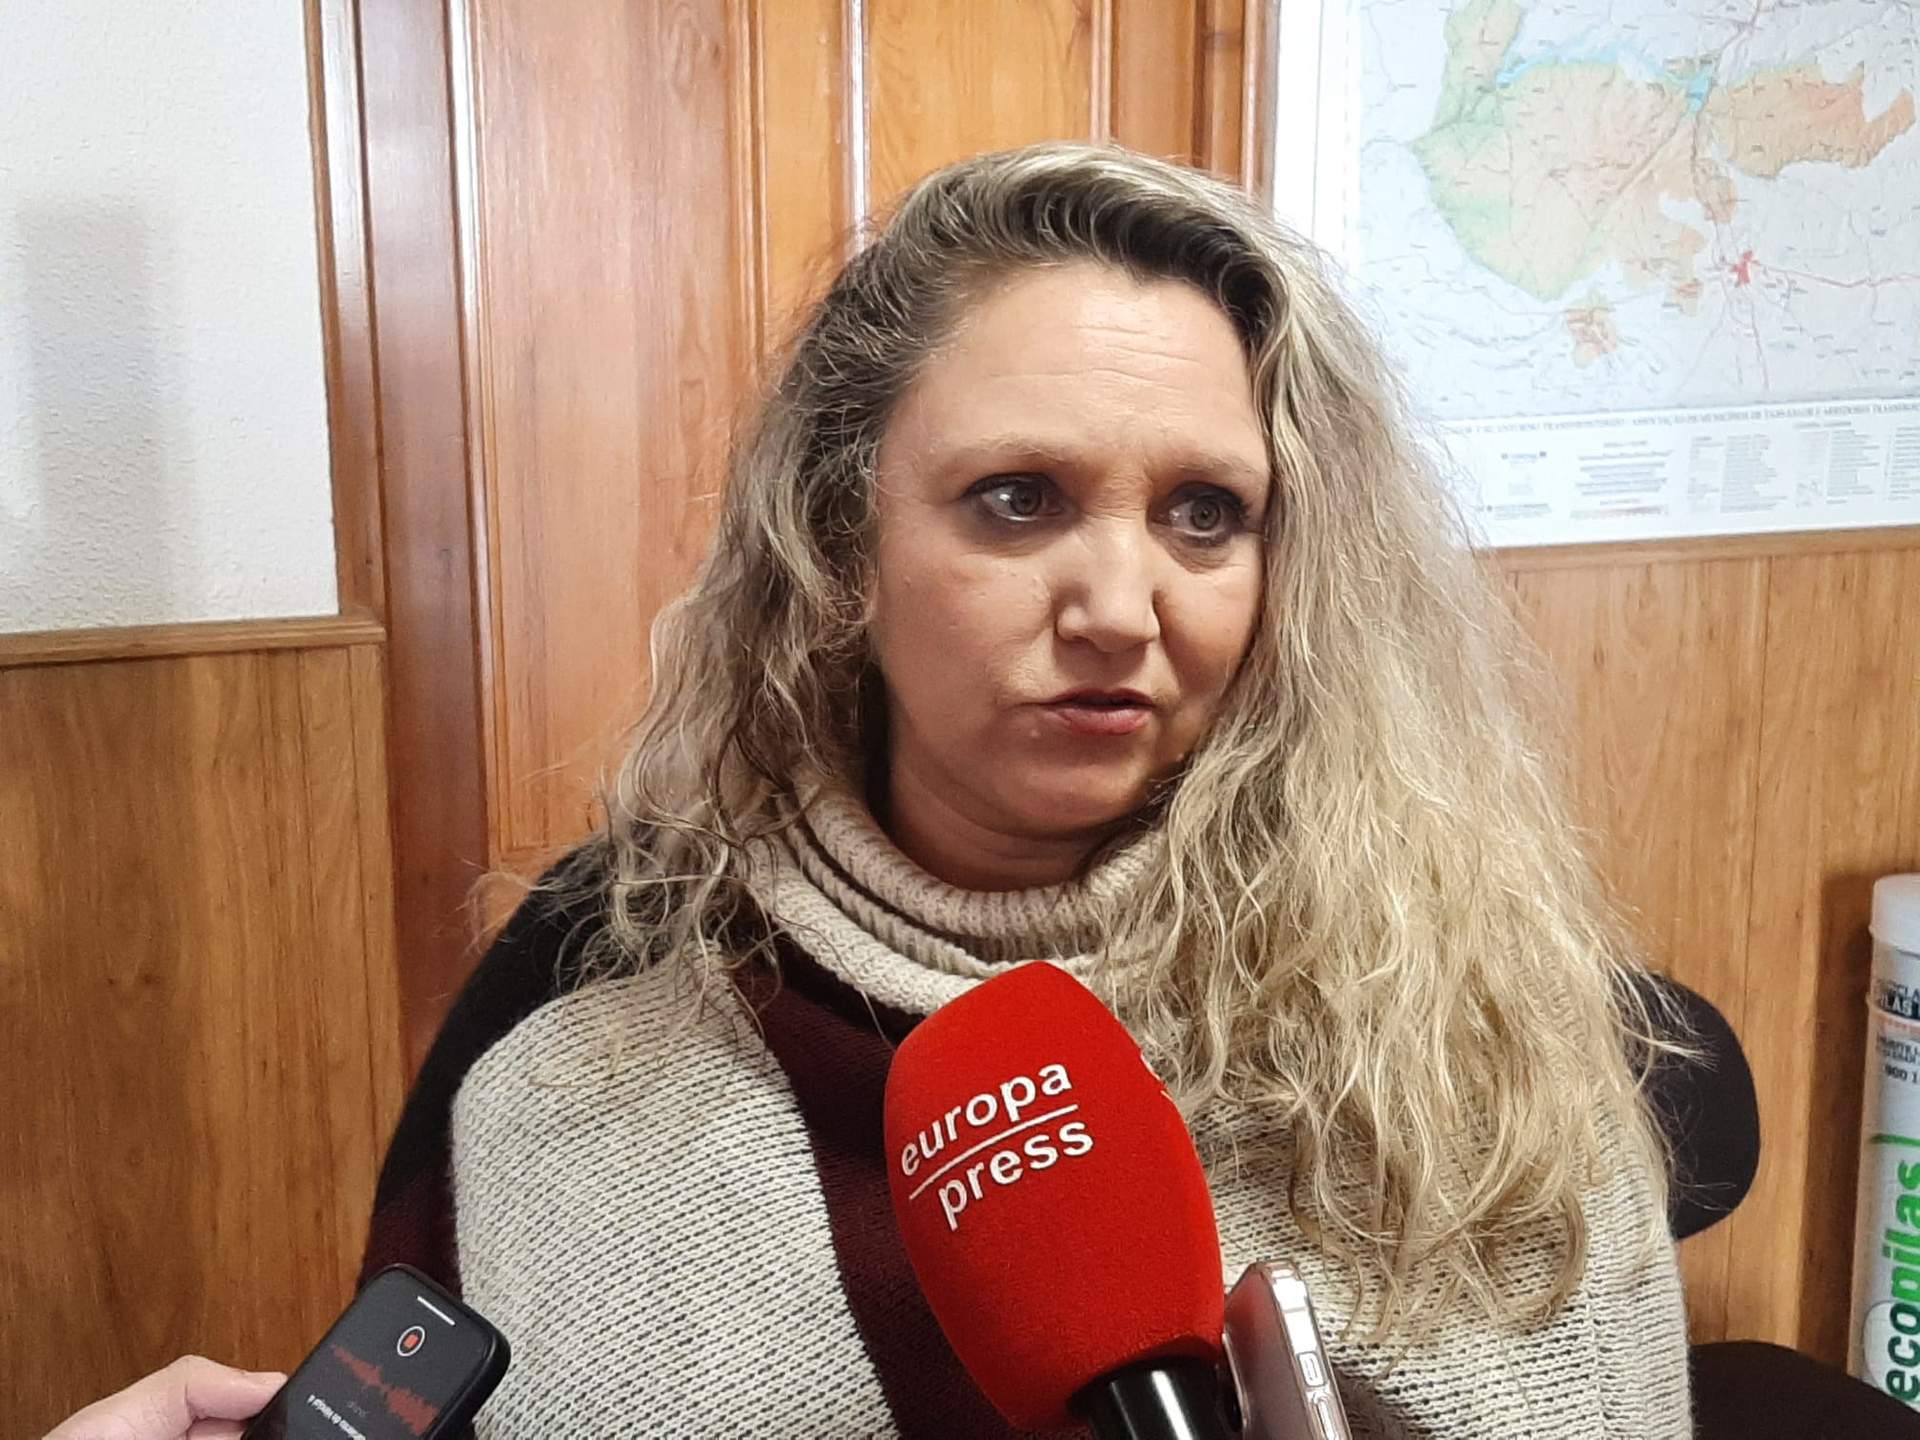 La alcaldesa de Hinojal (CÃ¡ceres) afirma que estÃ¡n viviendo dÃ­as "muy duros" en la localidad